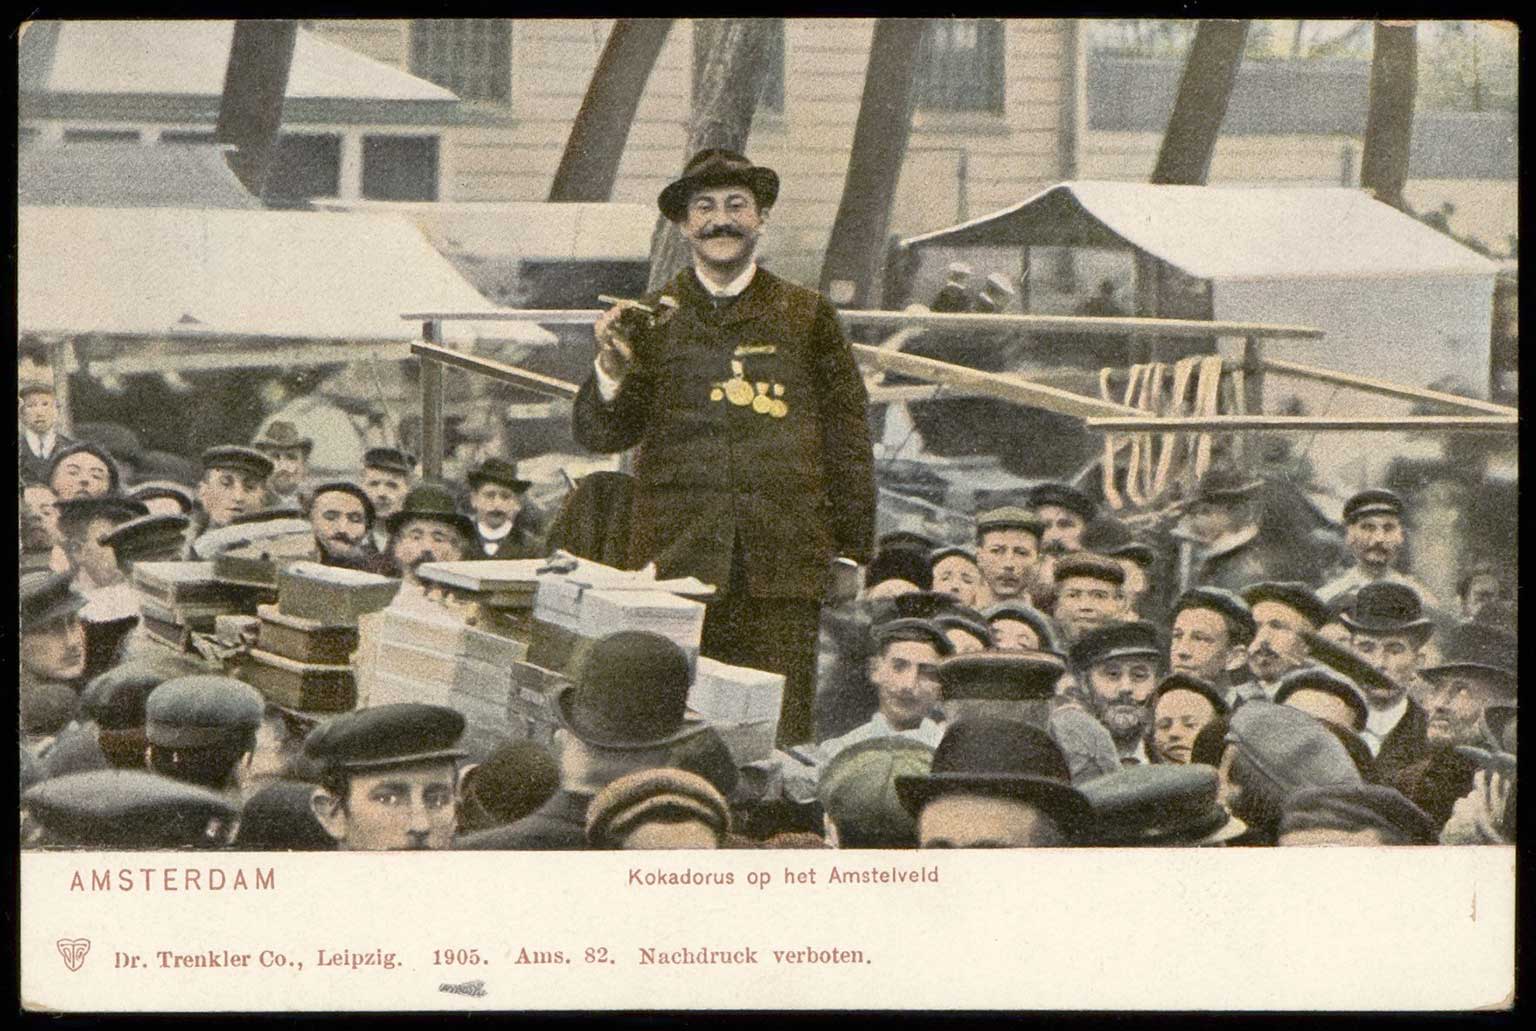 Kokadorus at work on the Amstelveld, Amsterdam, postcard from 1905